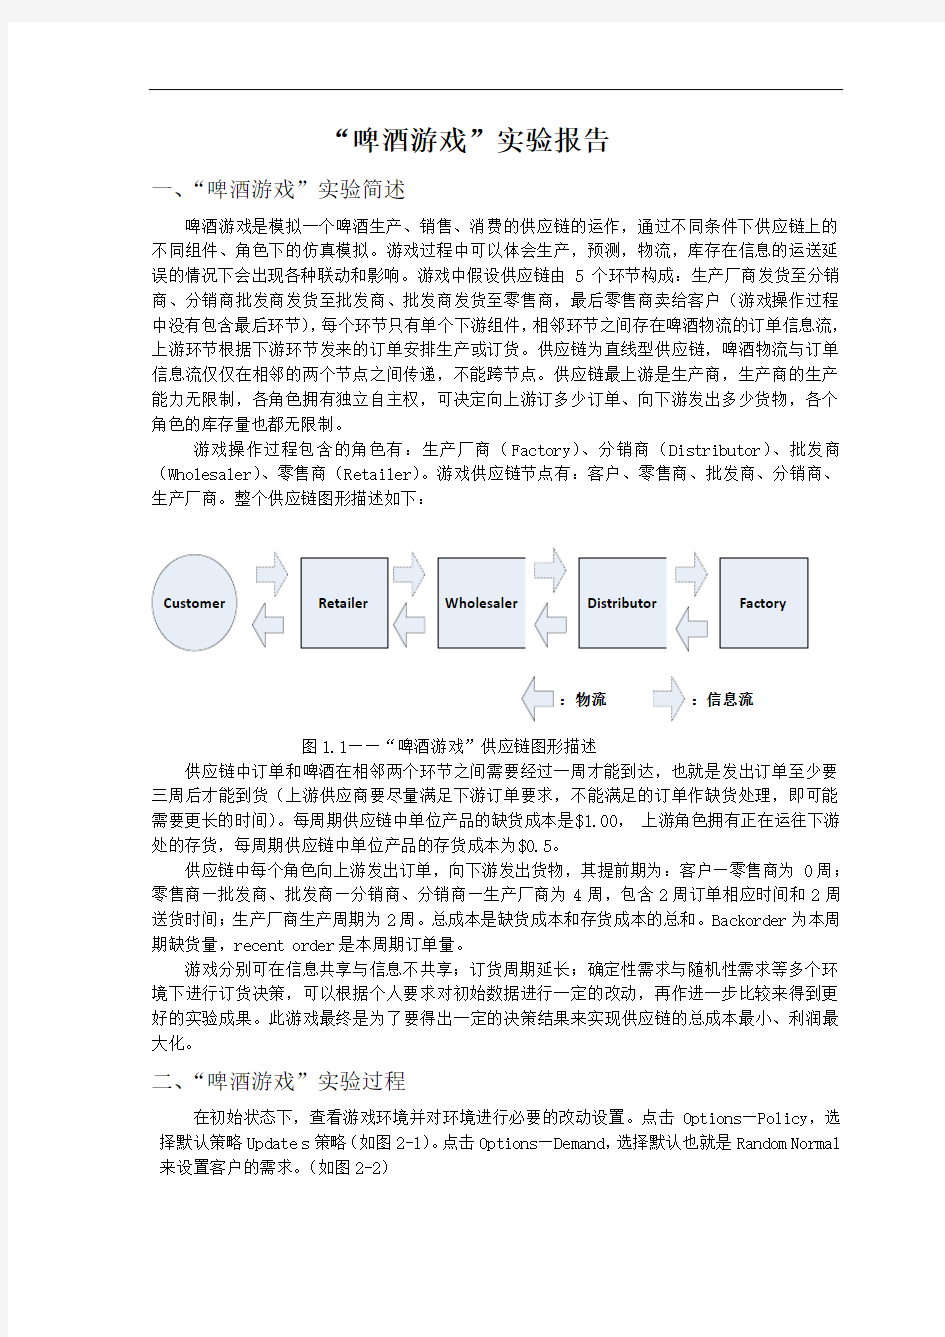 上海第二工业大学 供应链管理 大作业报告